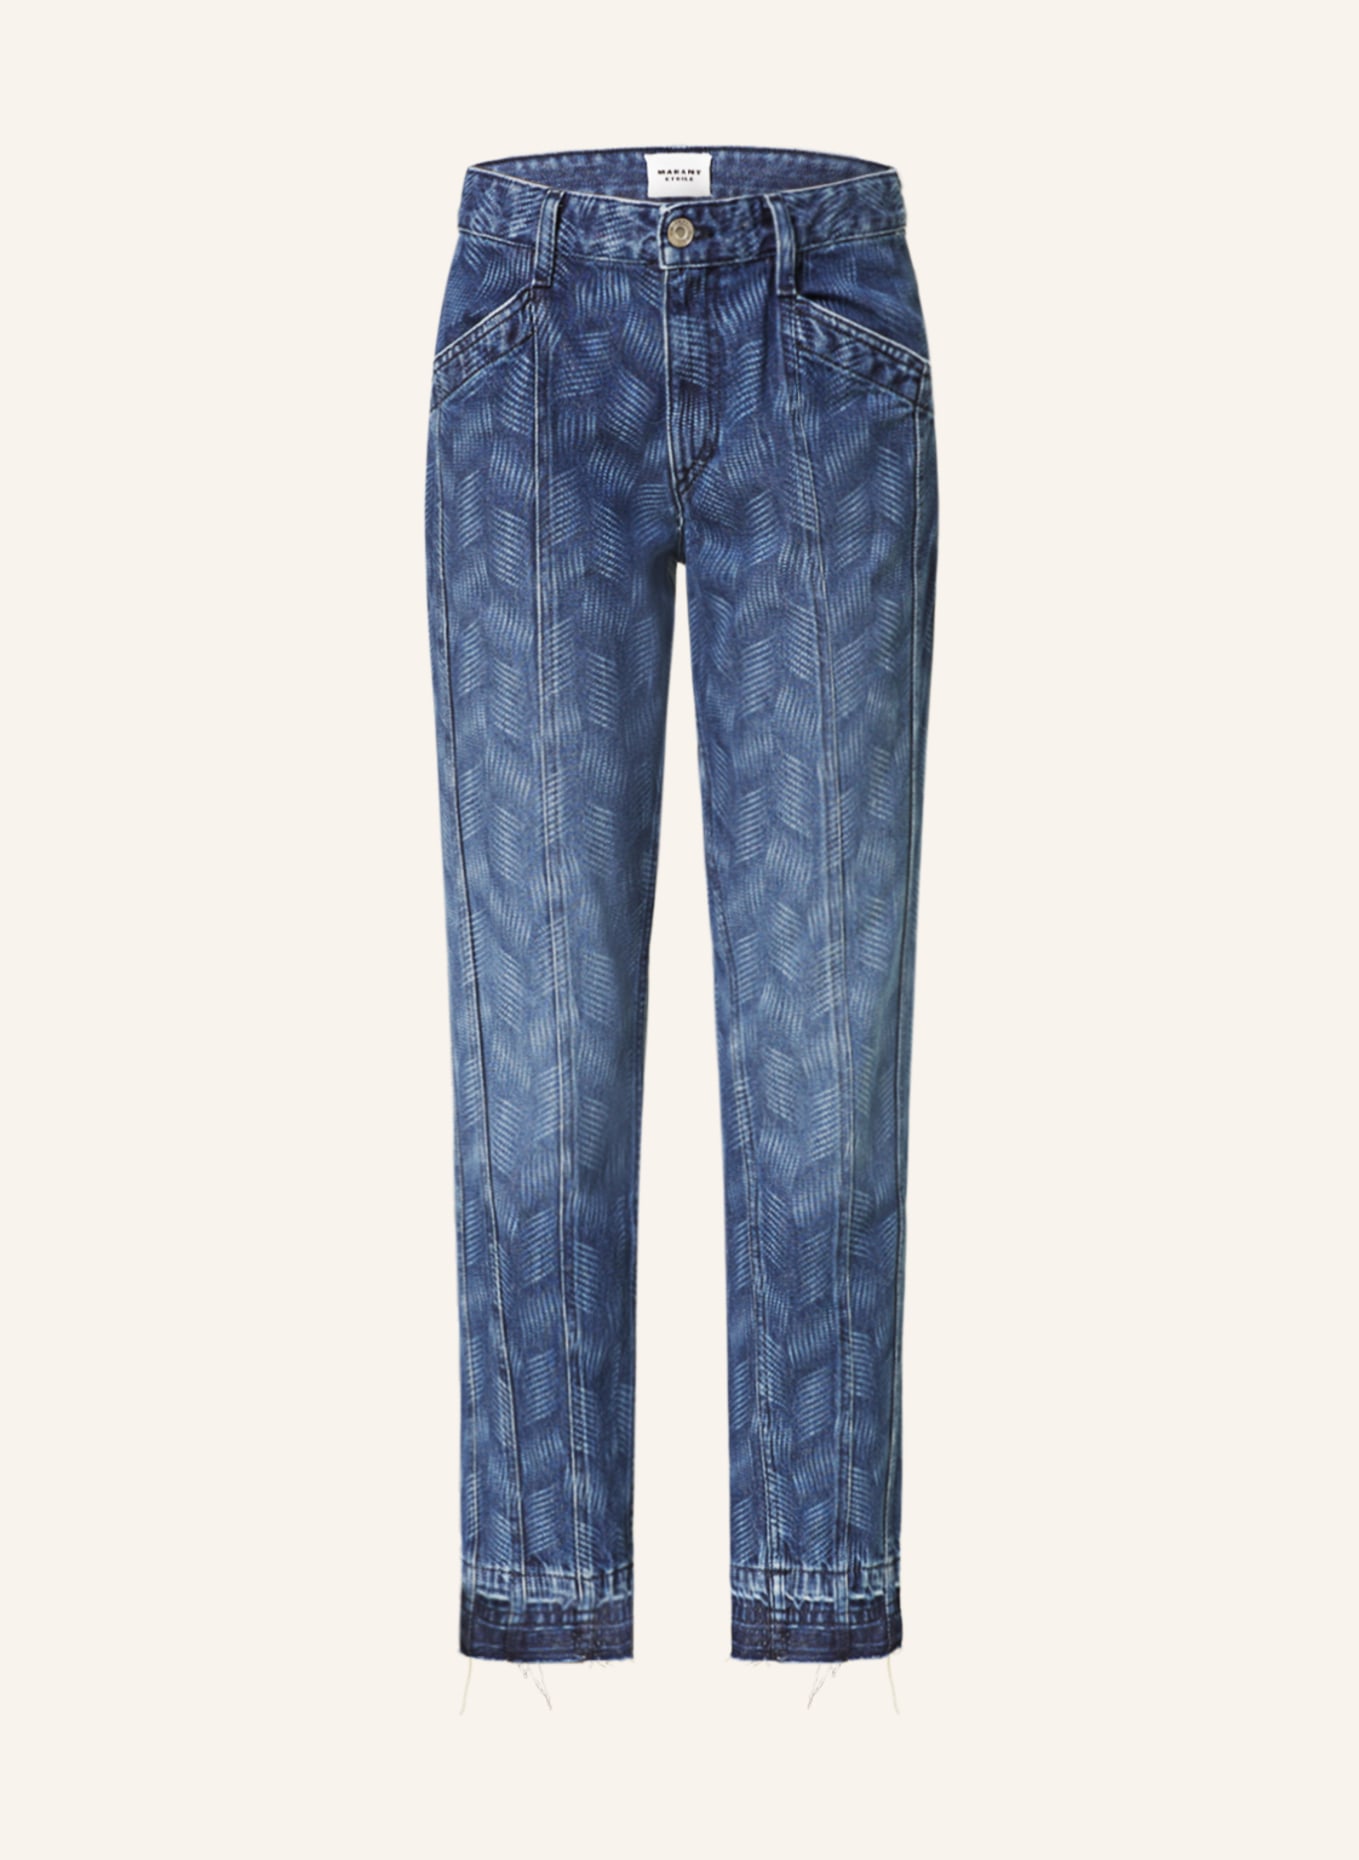 MARANT ÉTOILE Jeans SULANOA, Farbe: 30BU blue (Bild 1)